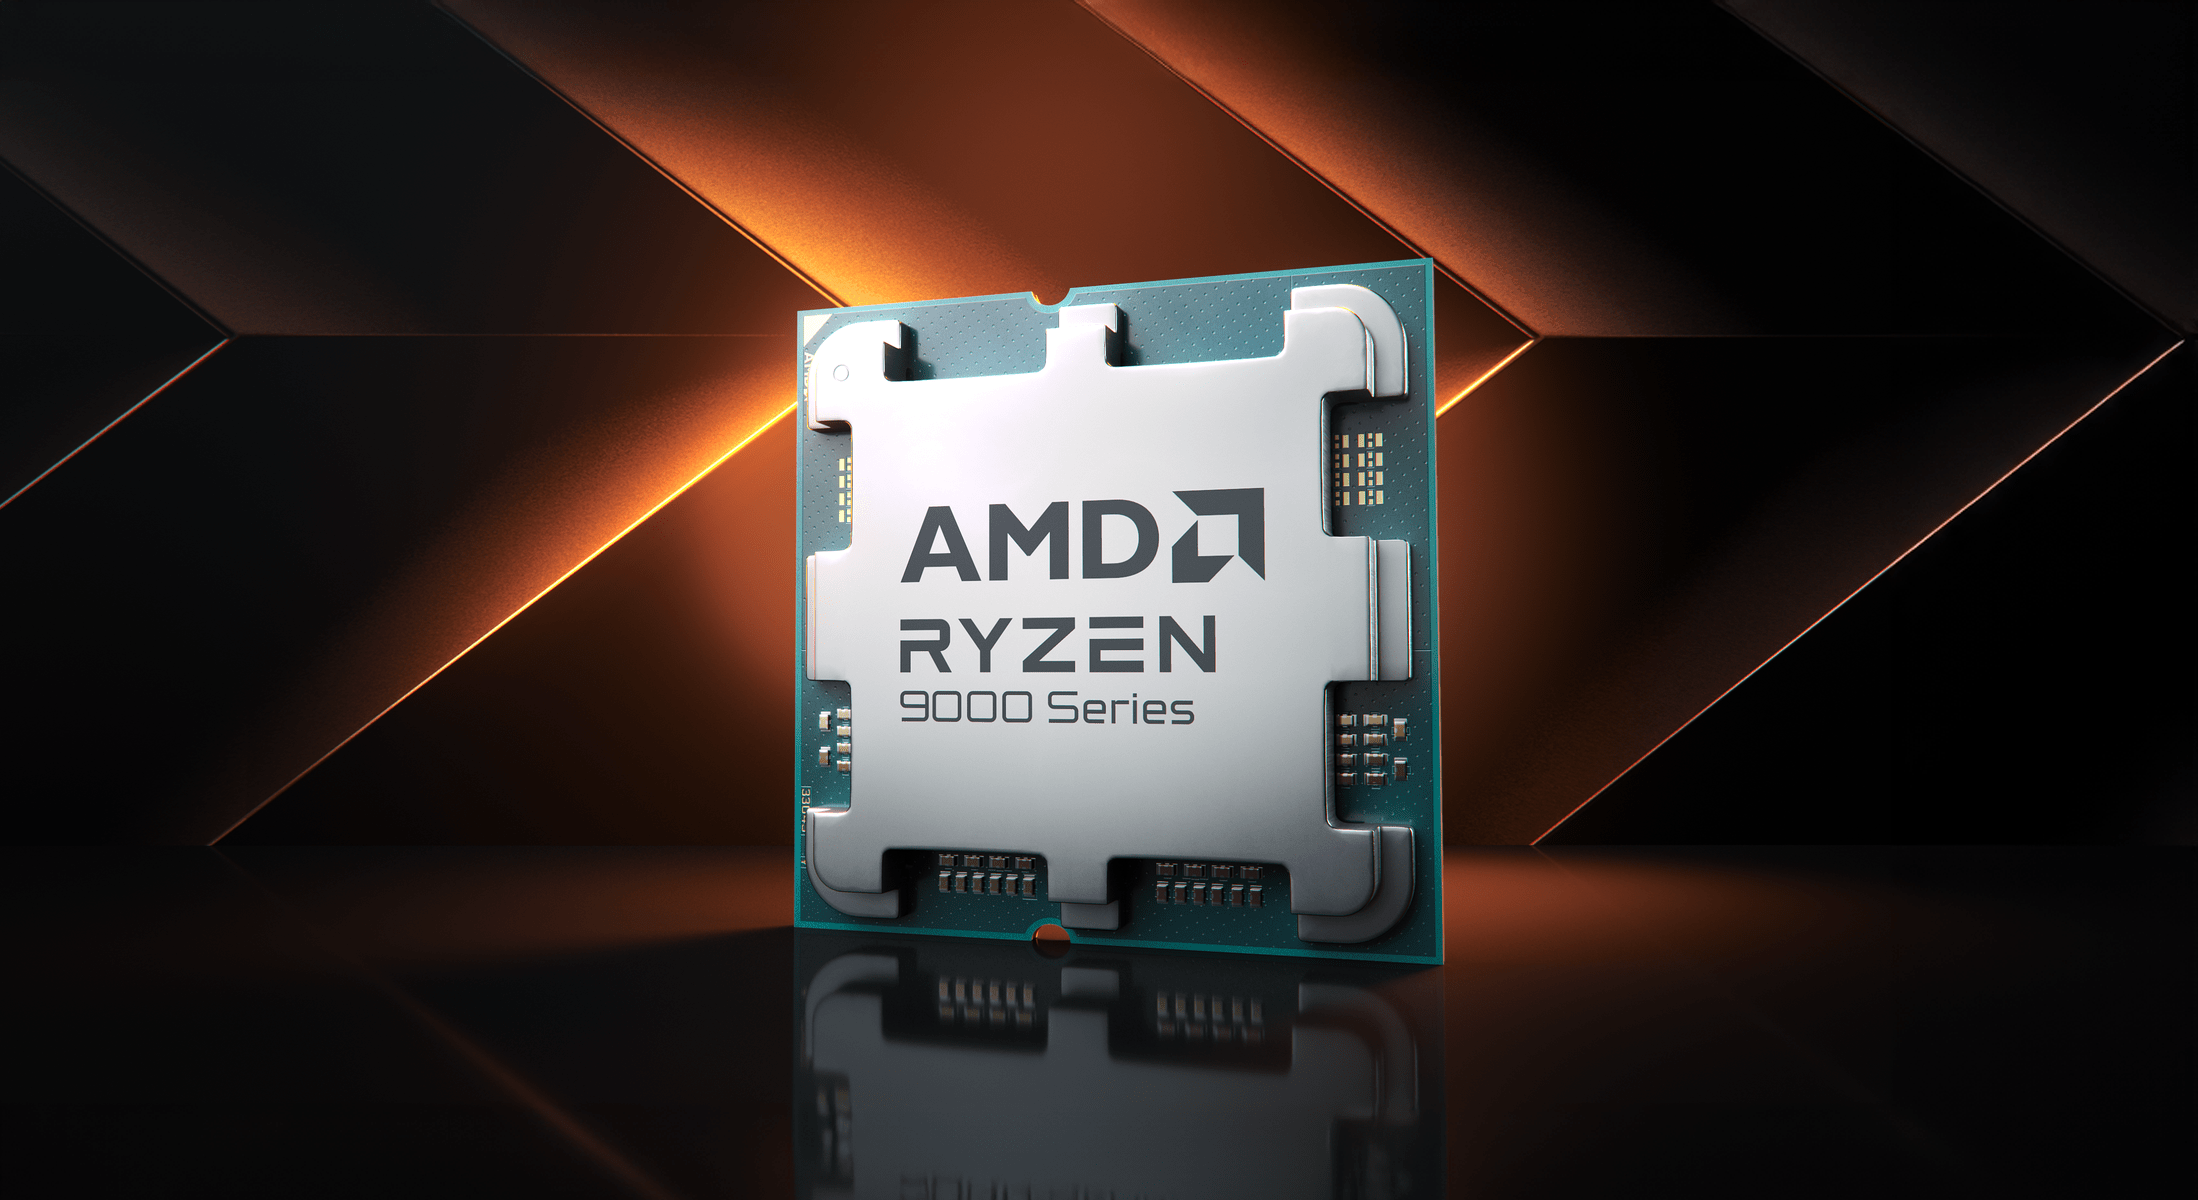 Procesor AMD Ryzen serii 9000 na tle geometrycznych kształtów z oświetleniem.